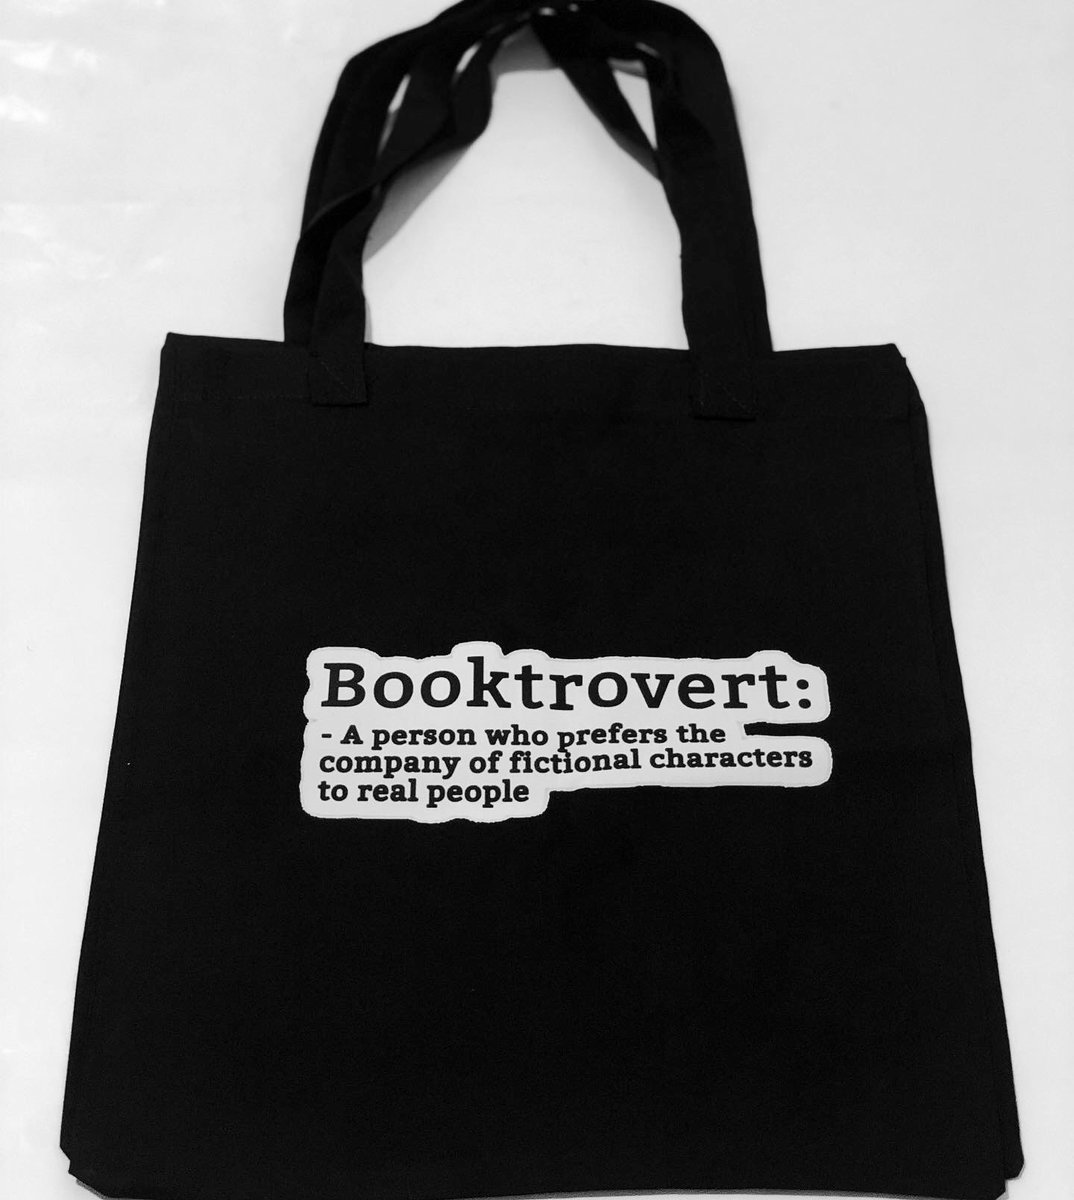 3. Booktrovert: